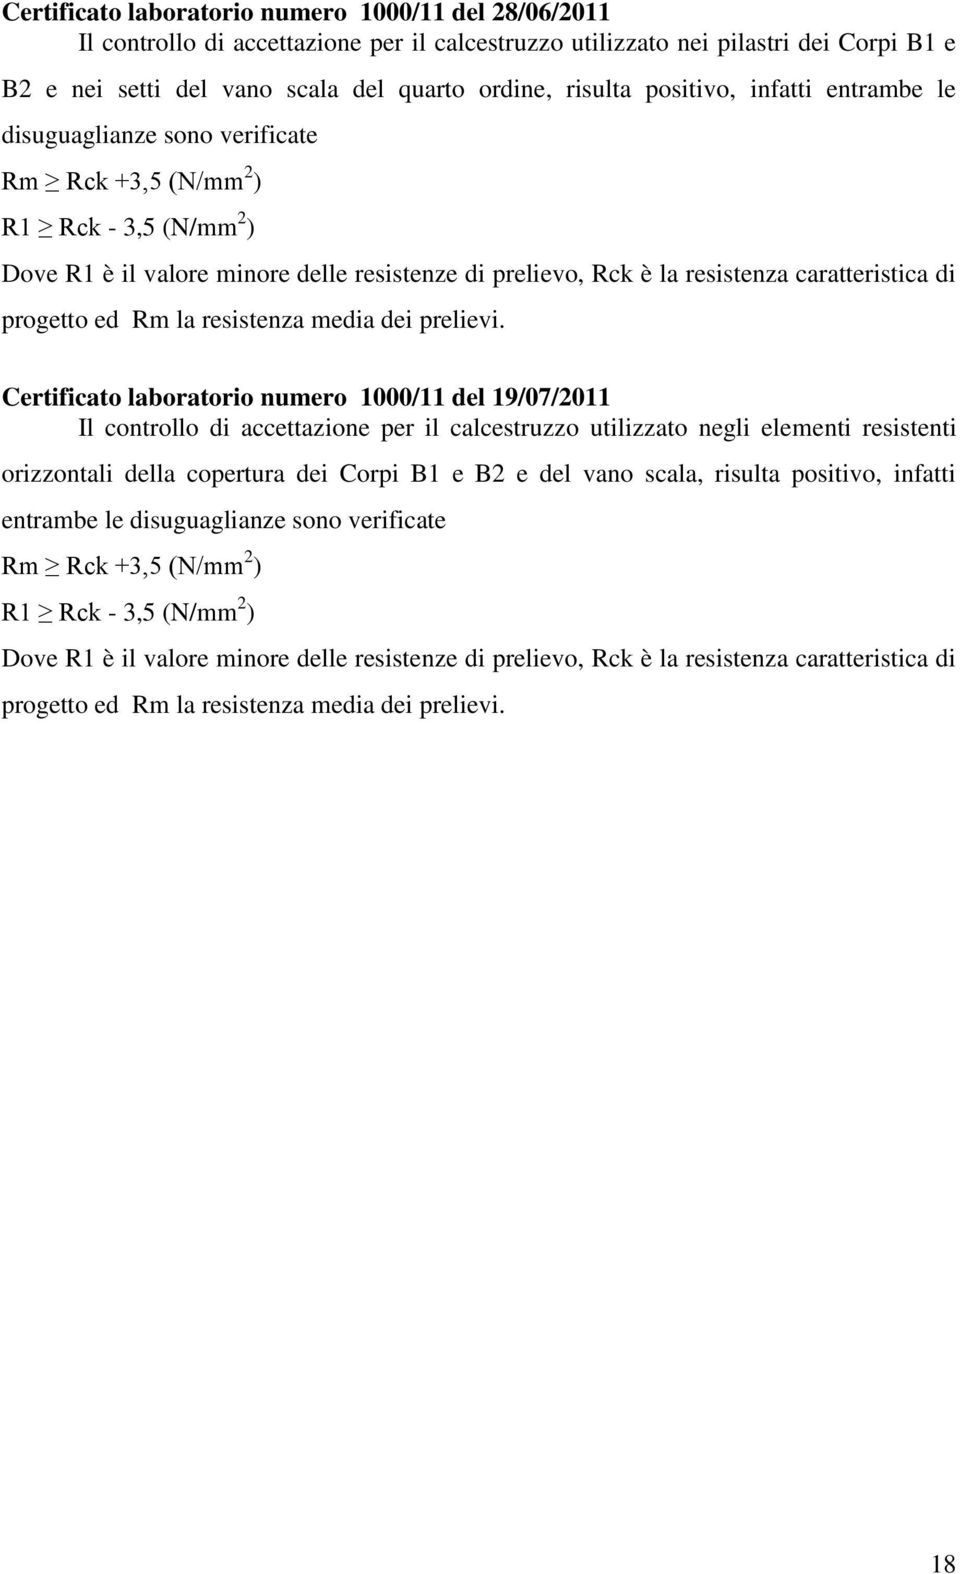 Certificato laboratorio numero 1000/11 del 19/07/2011 Il controllo di accettazione per il calcestruzzo utilizzato negli elementi